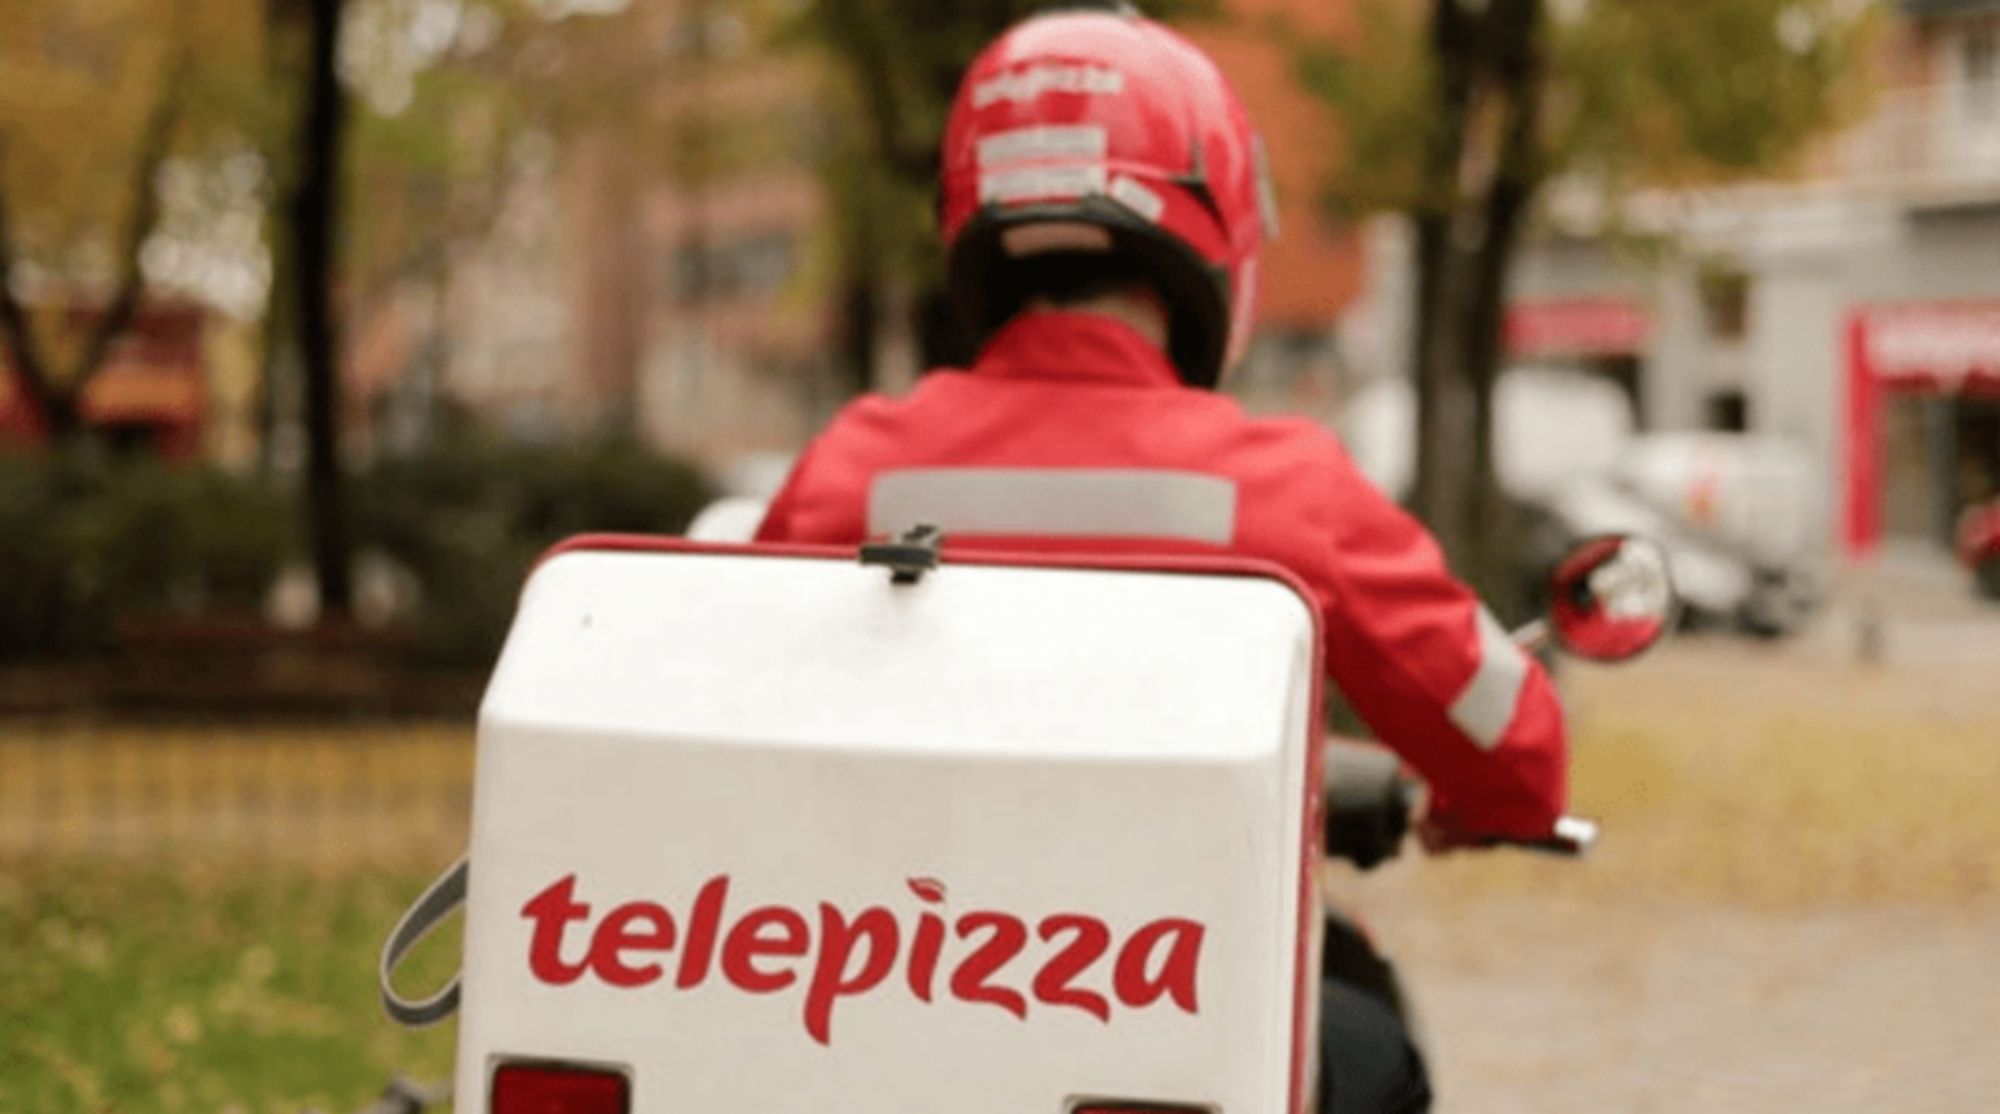 Oferta de empleo en Telepizza: busca personal de limpieza. En la imagen, un repartidor de Telepizza en una imagen de archivo.